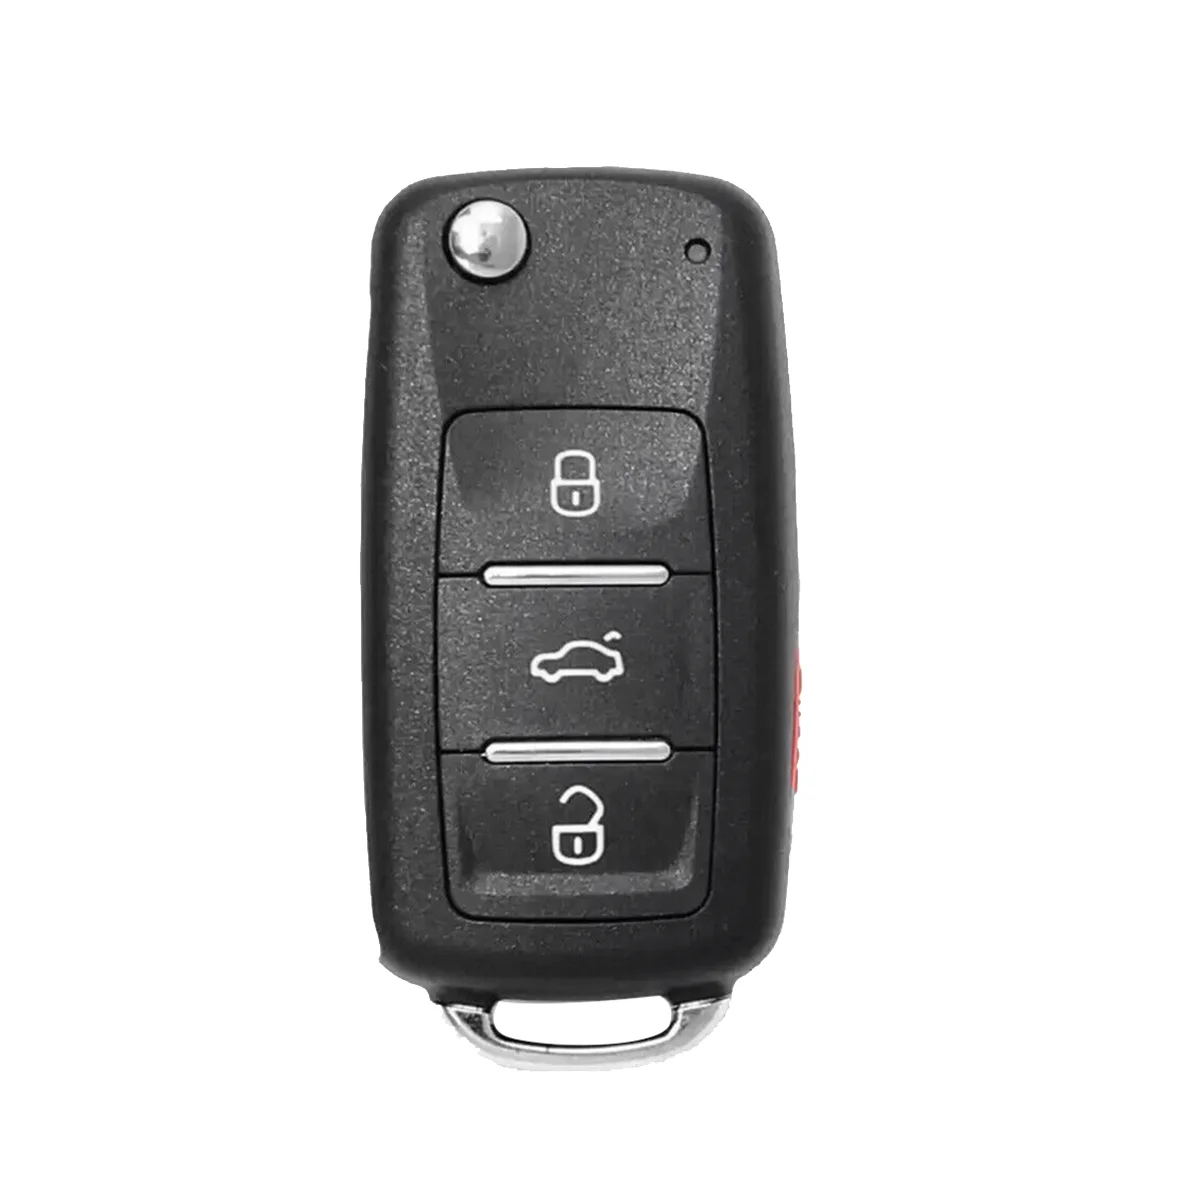 

KEYDIY B08-3 + 1 KD пульт дистанционного управления автомобильный ключ универсальный 4 кнопки для VW стиль для KD900/Φ KD MINI/ URG200 программатор